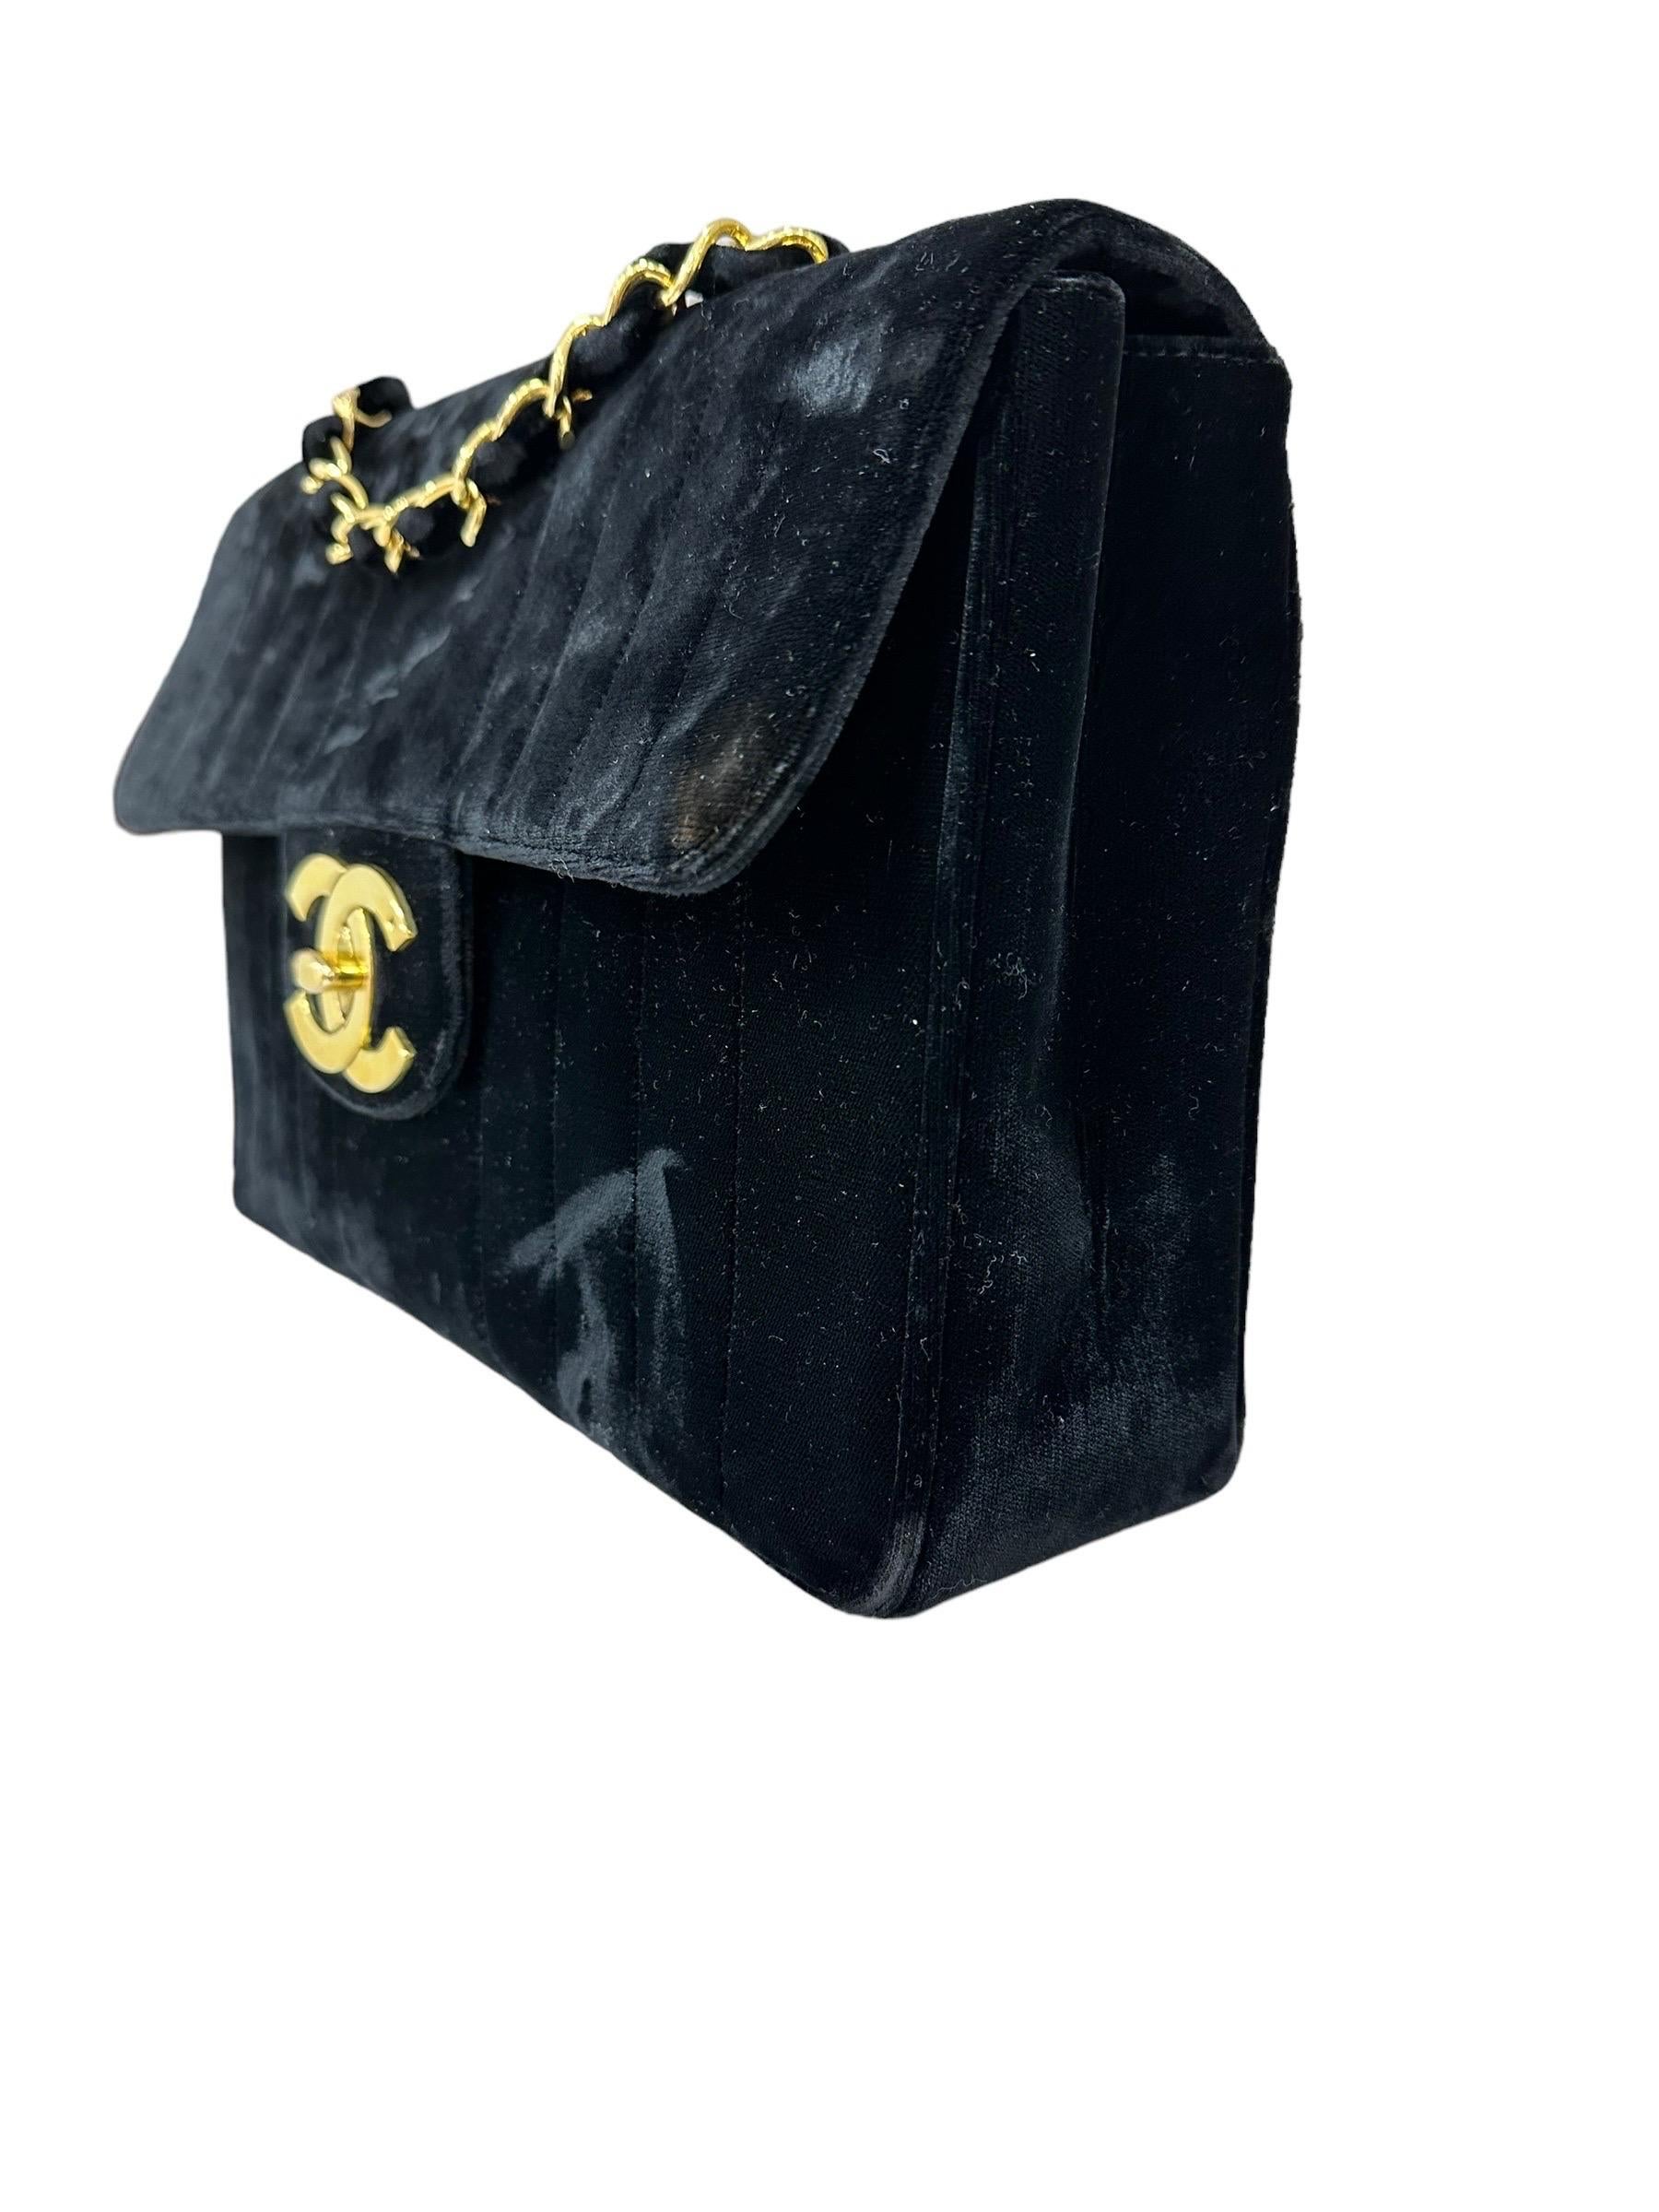 Borsa firmata Chanel, modello Jumbo Classic Flap Big Logo, realizzata in velluto nero con hardware dorati. Dotata di una patta con chiusura a girello e logo CC, internamente rivestita in pelle liscia nera, abbastanza capiente. Munita di una tracolla